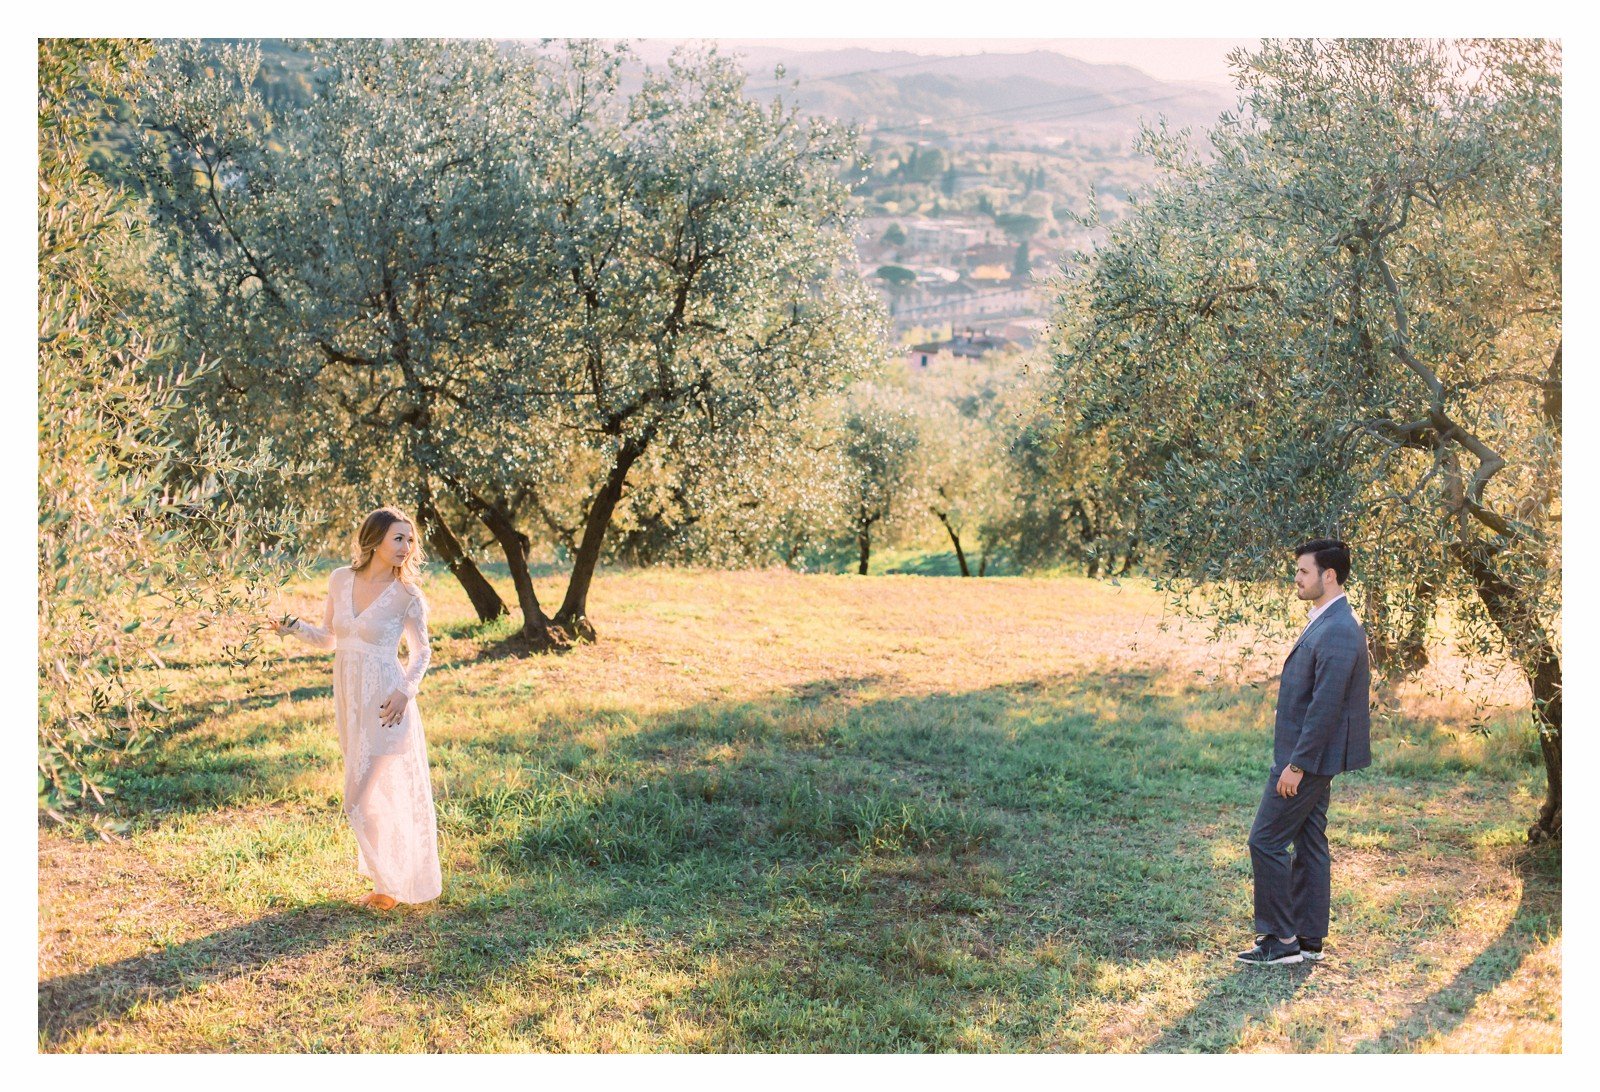 tuscany-countryside-val-dorcia-wedding-couple-photoshoot-photographer_0031.jpg